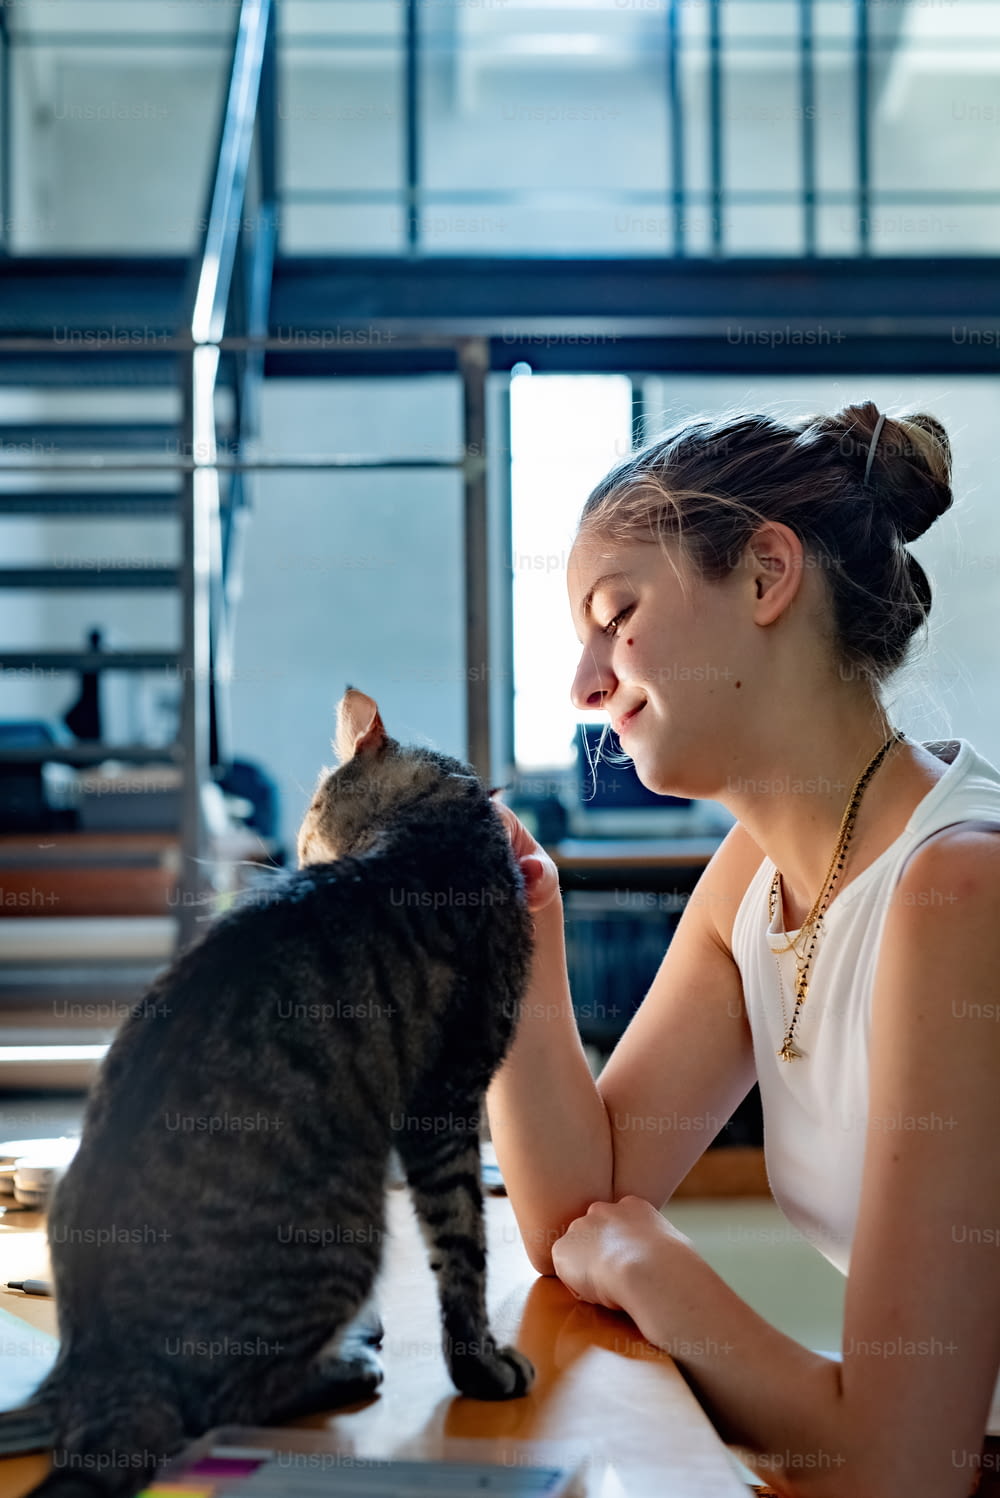 Una mujer sentada en una mesa acariciando a un gato